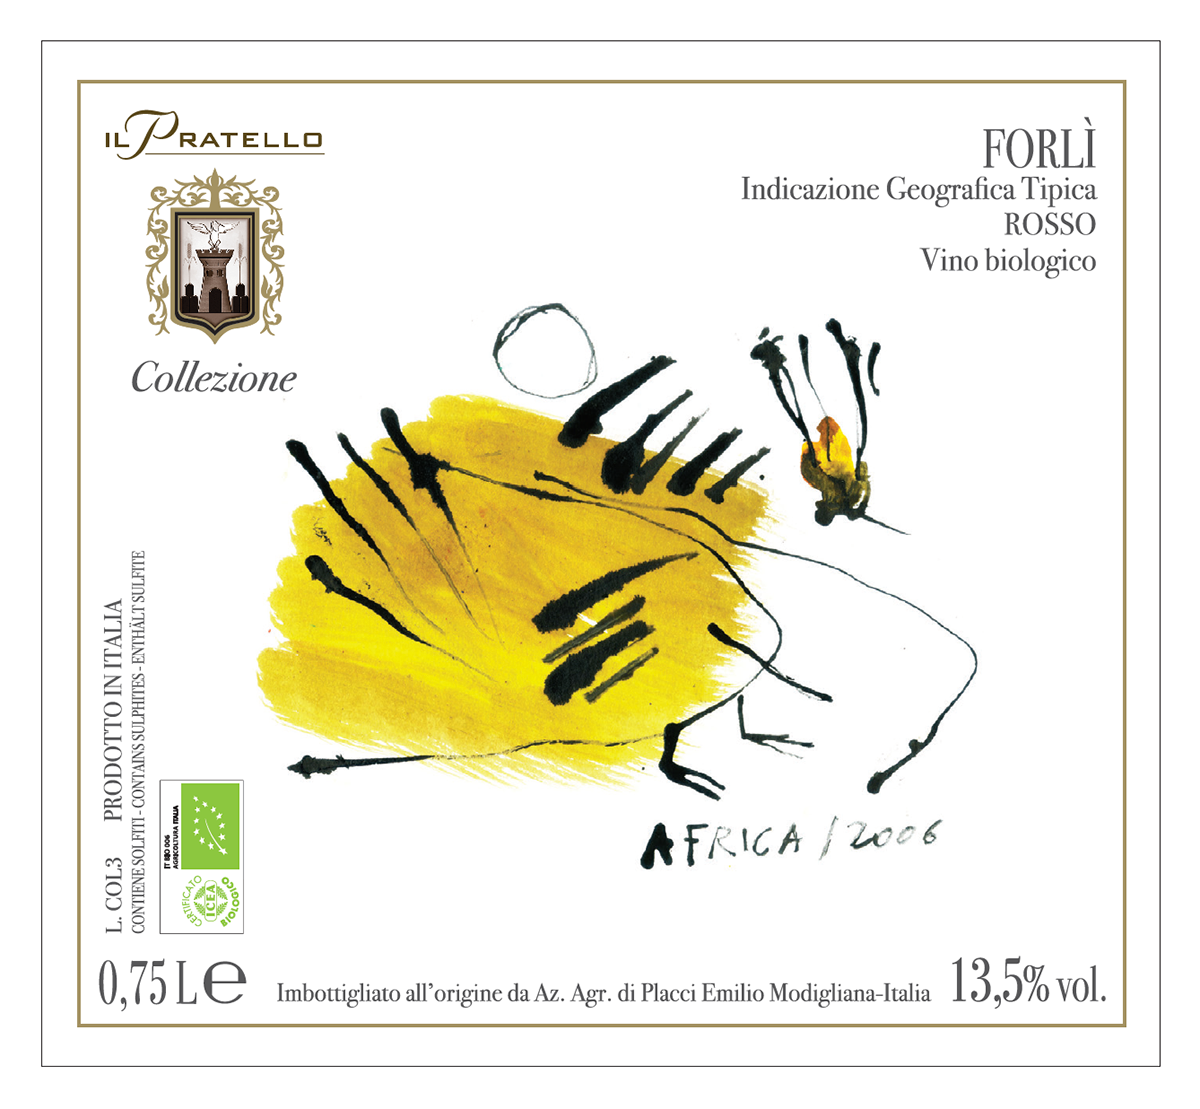 wine italian wine Label wine label francesca ballarini vino etichette vino giorgio melandri illustrated label Sangiovese